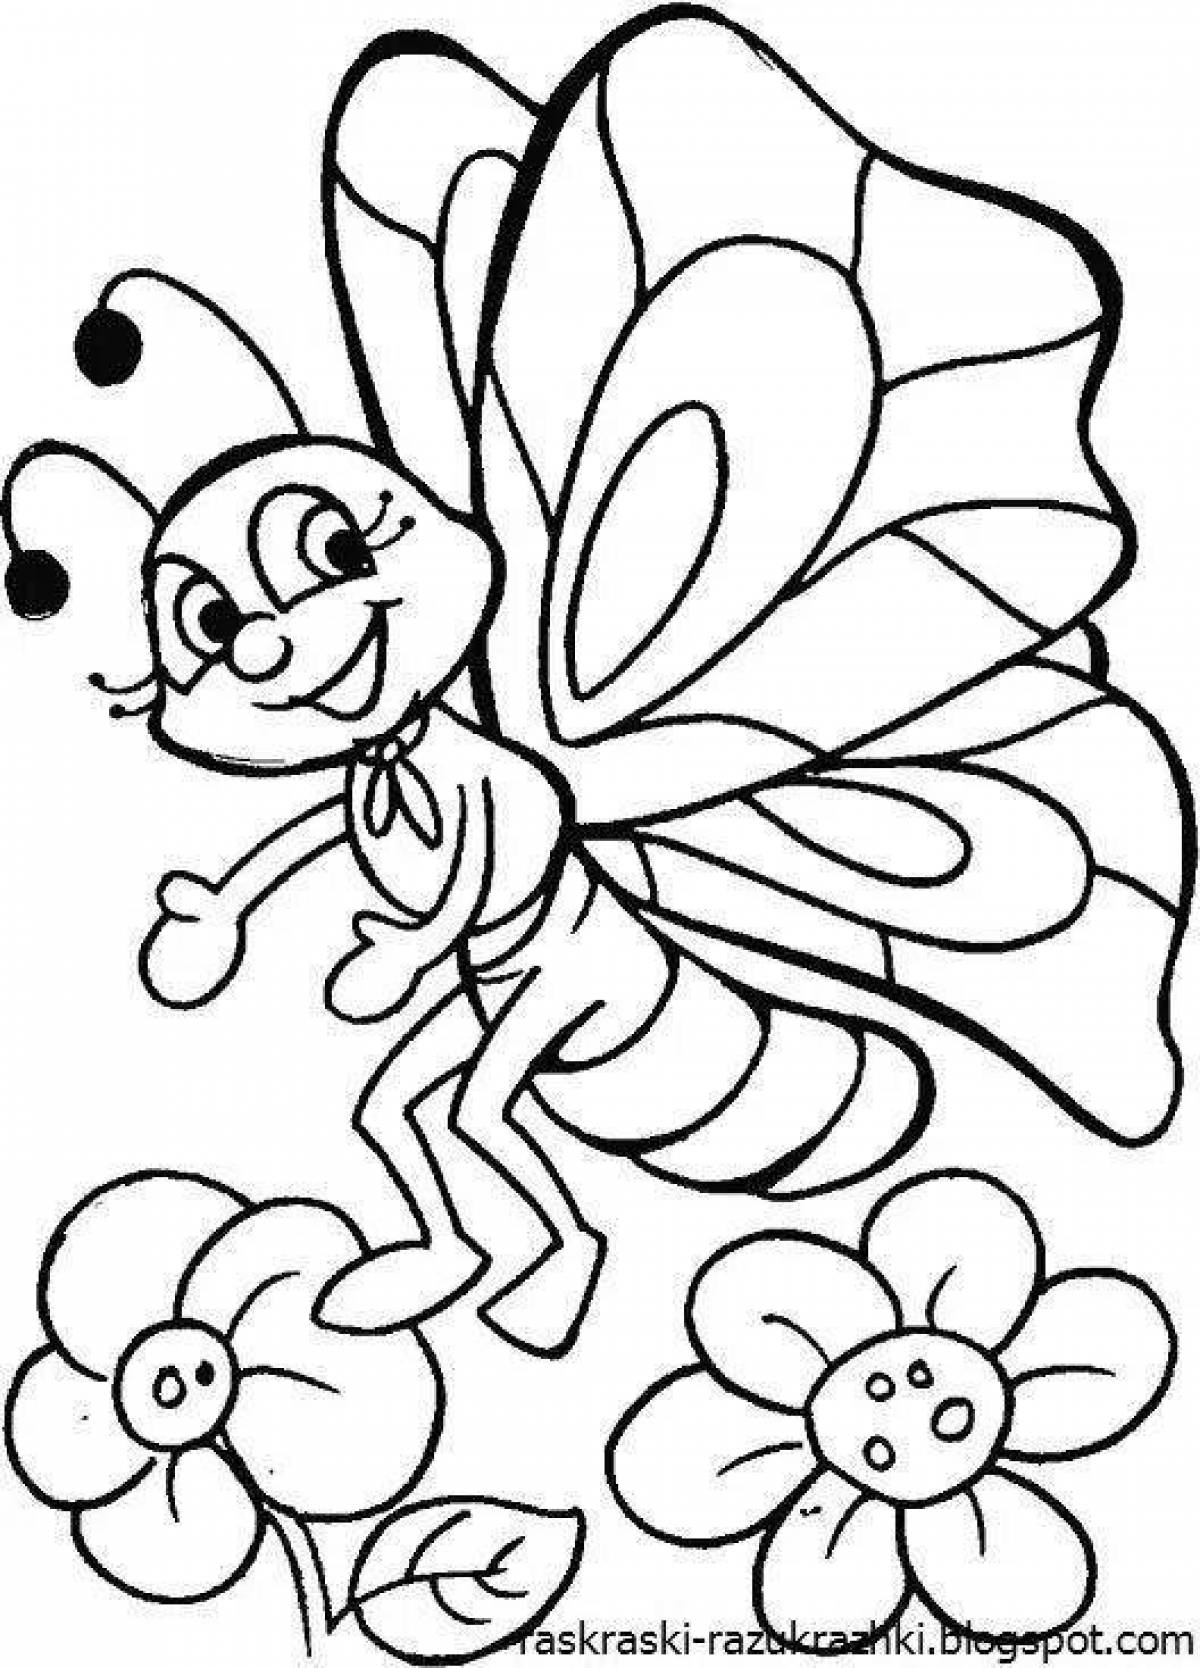 Насекомые раскраска для детей 6 7 лет. Бабочка раскраска для детей. Раскраски длядля детей. Раскраски насекомые для детей 4-5 лет. Раскраска насекомые для малышей.